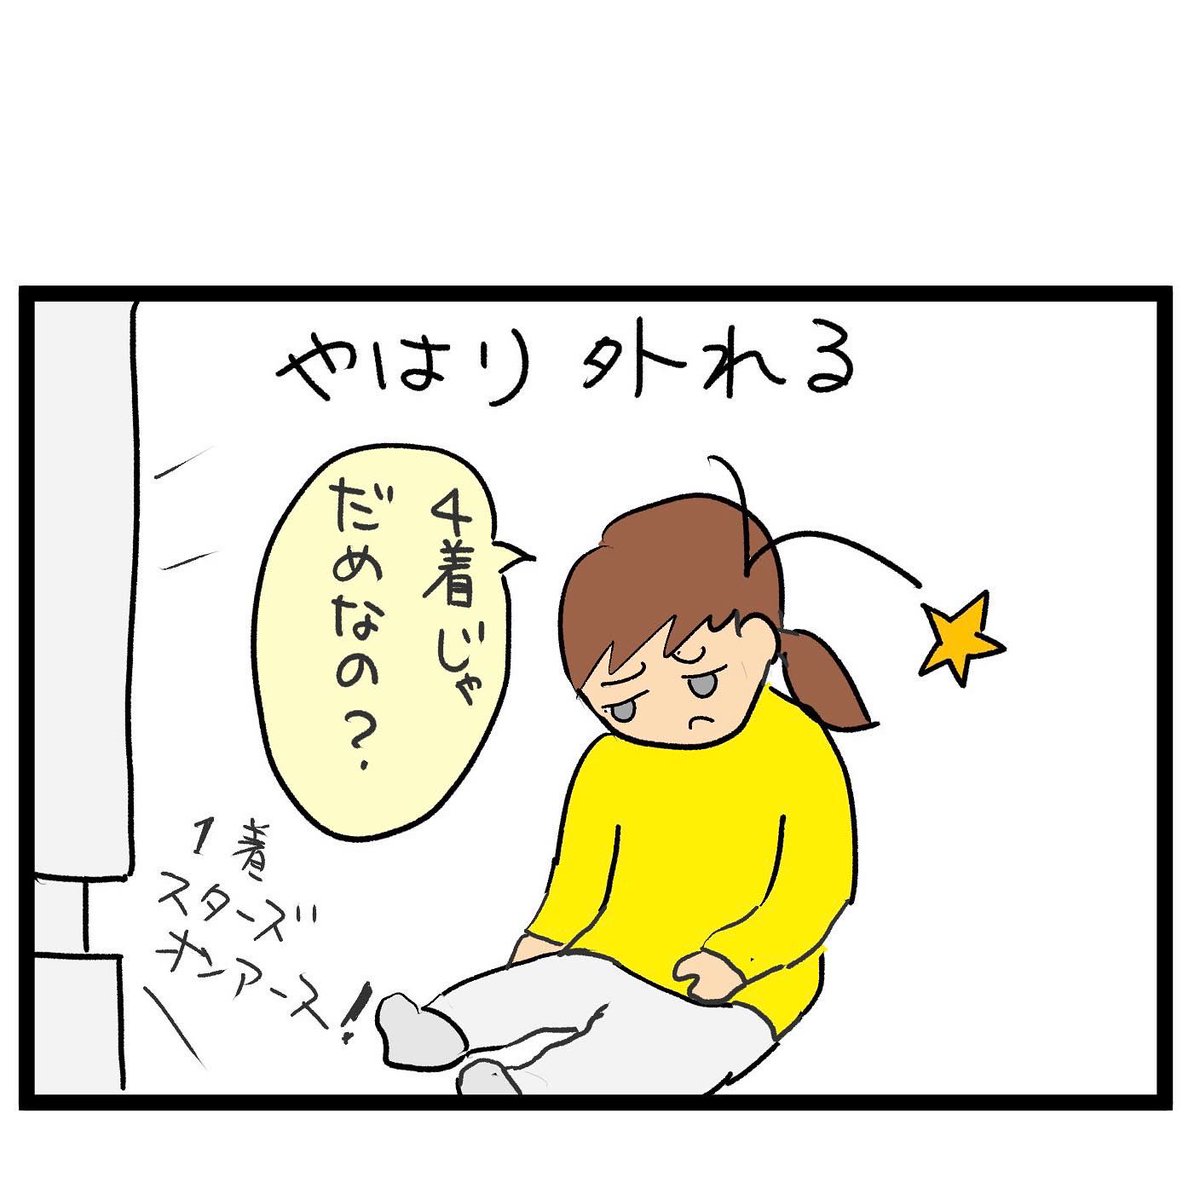 #四コマ漫画
#桜花賞
4位じゃダメなんですか 